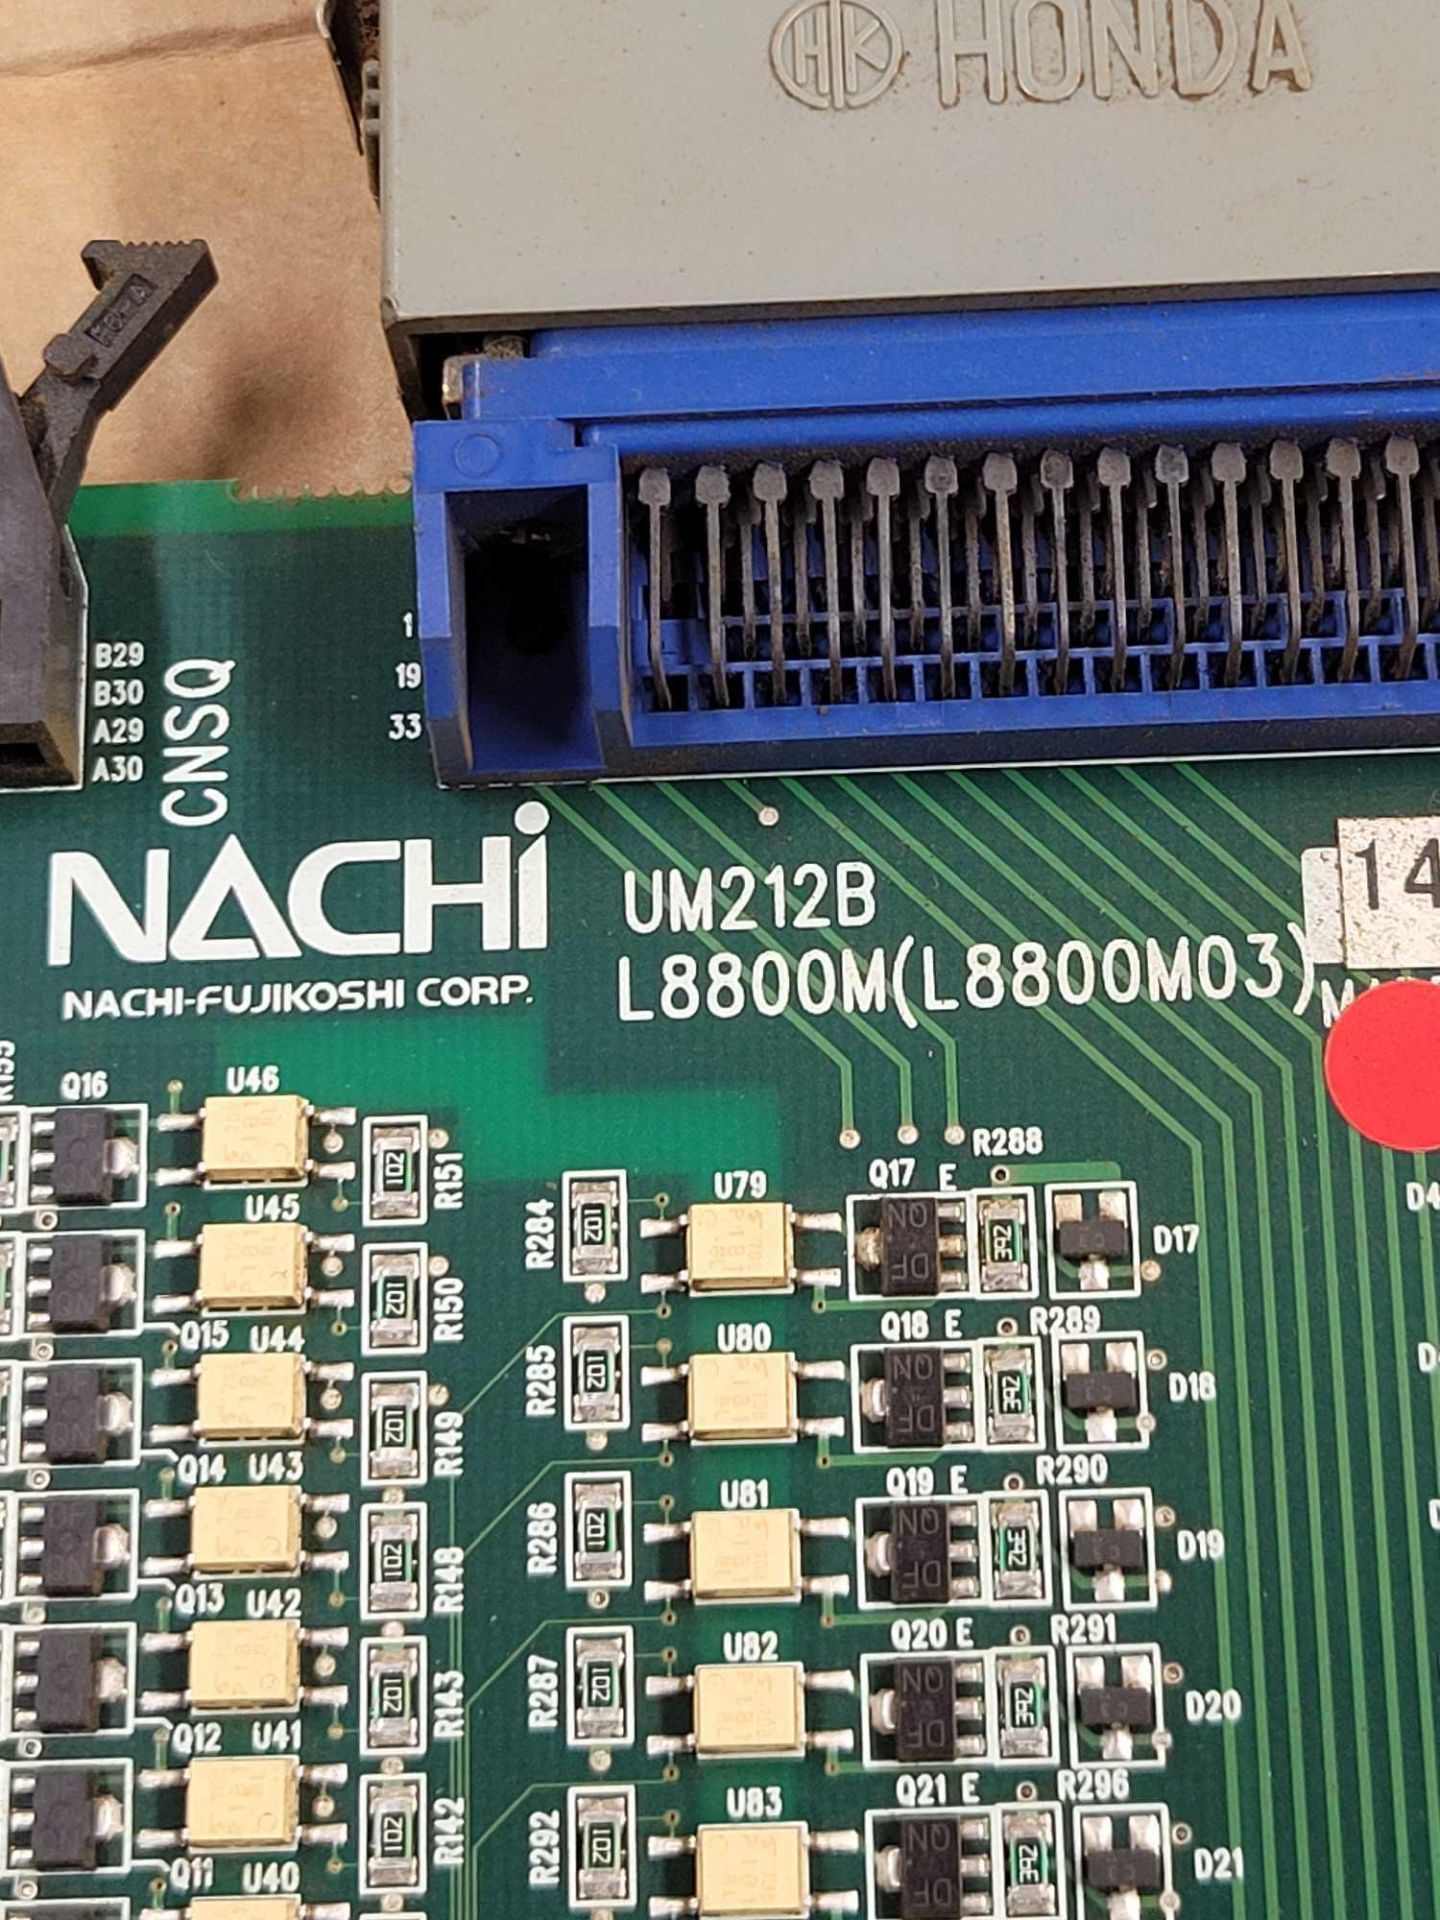 NACHI L8800M (L8800M03) / PCB Board Card  /  Lot Weight: 0.8 lbs - Image 3 of 5